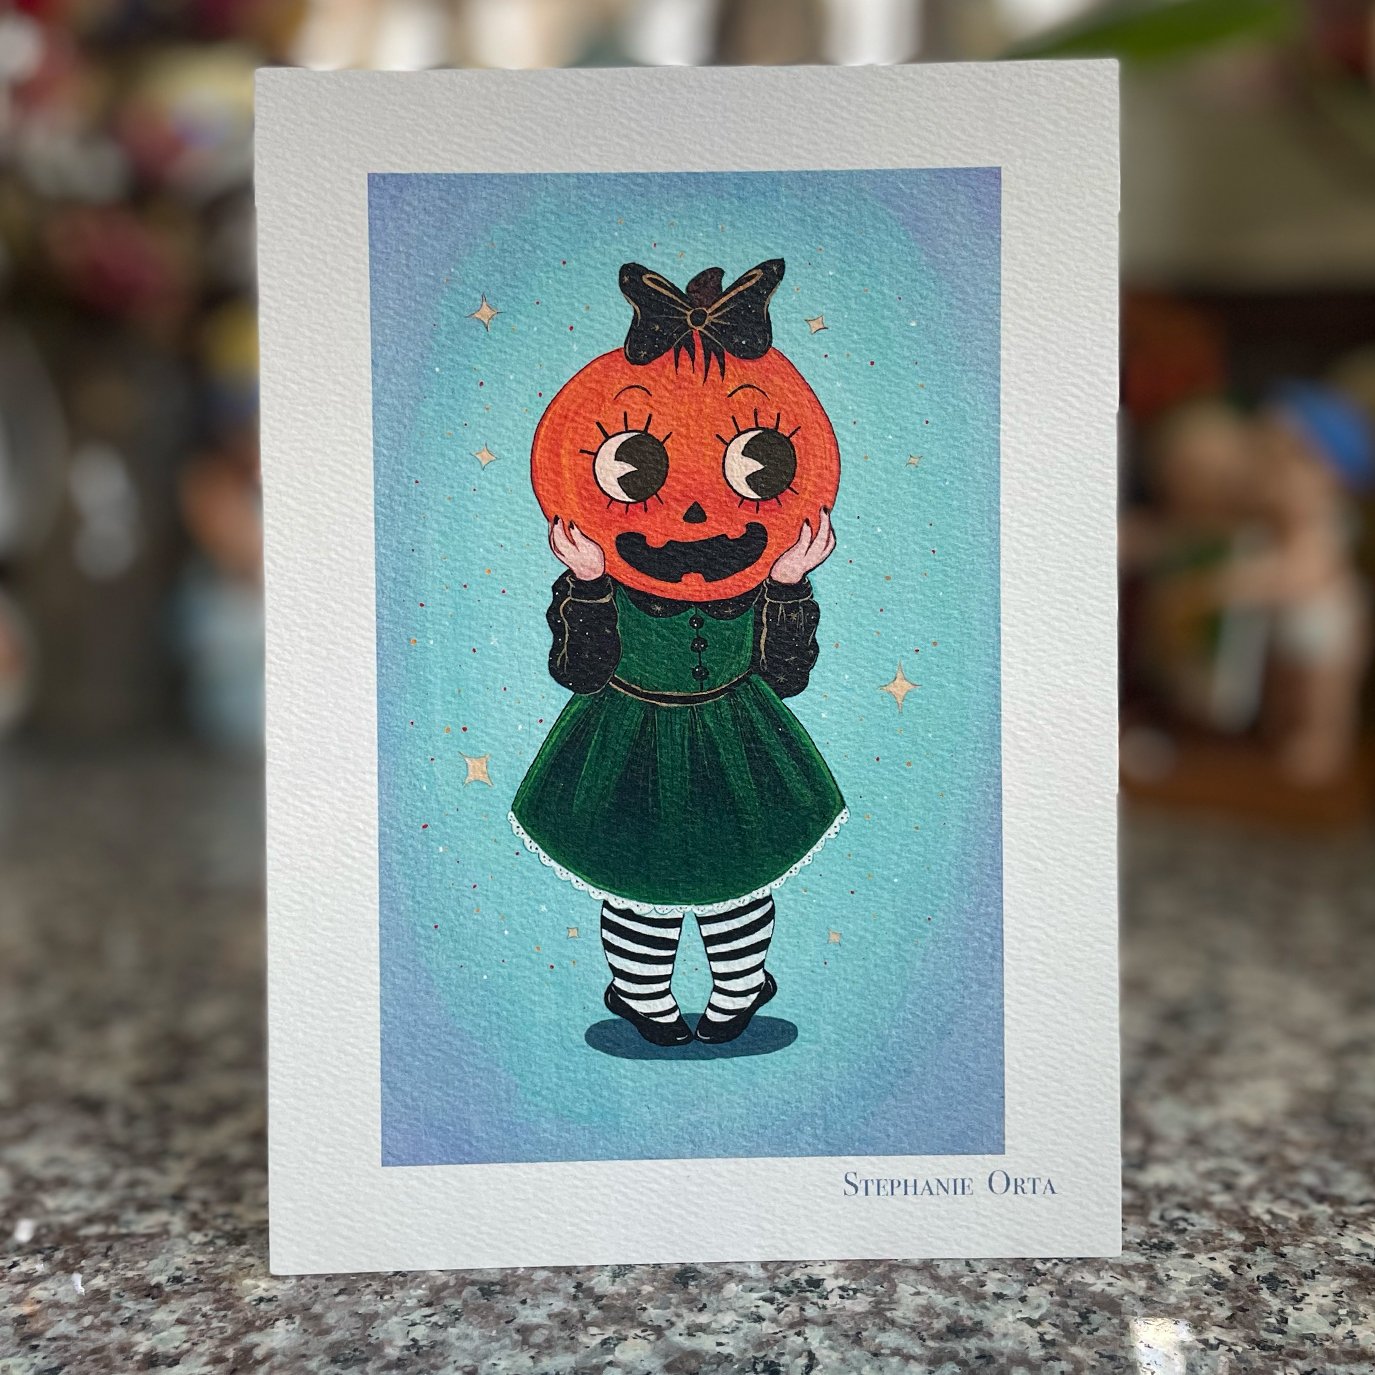 Lil' Pumpkin Cutie 5" x 7" inch Print 